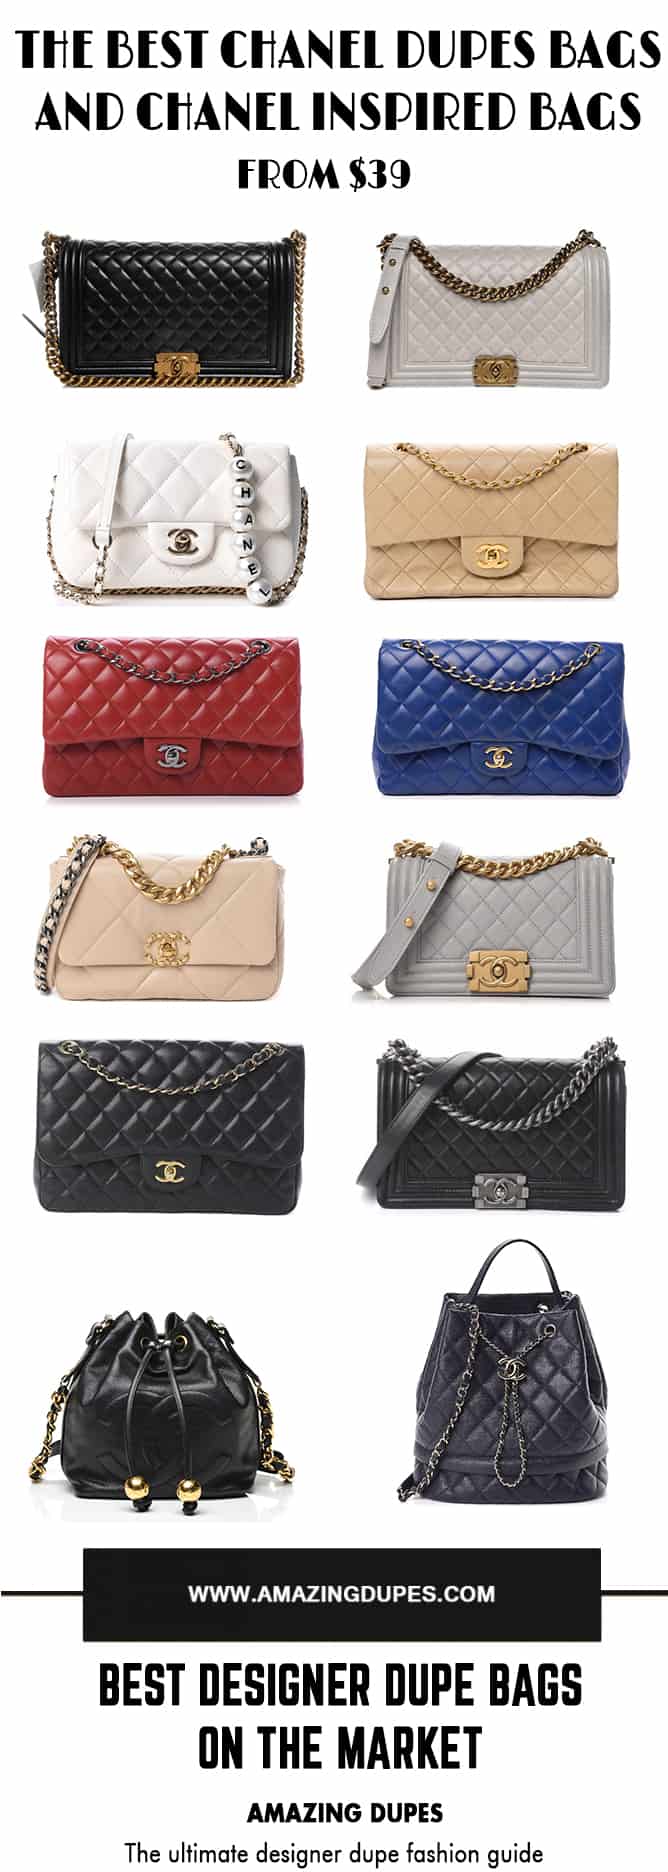 Baginc Chanel Bag Dupes